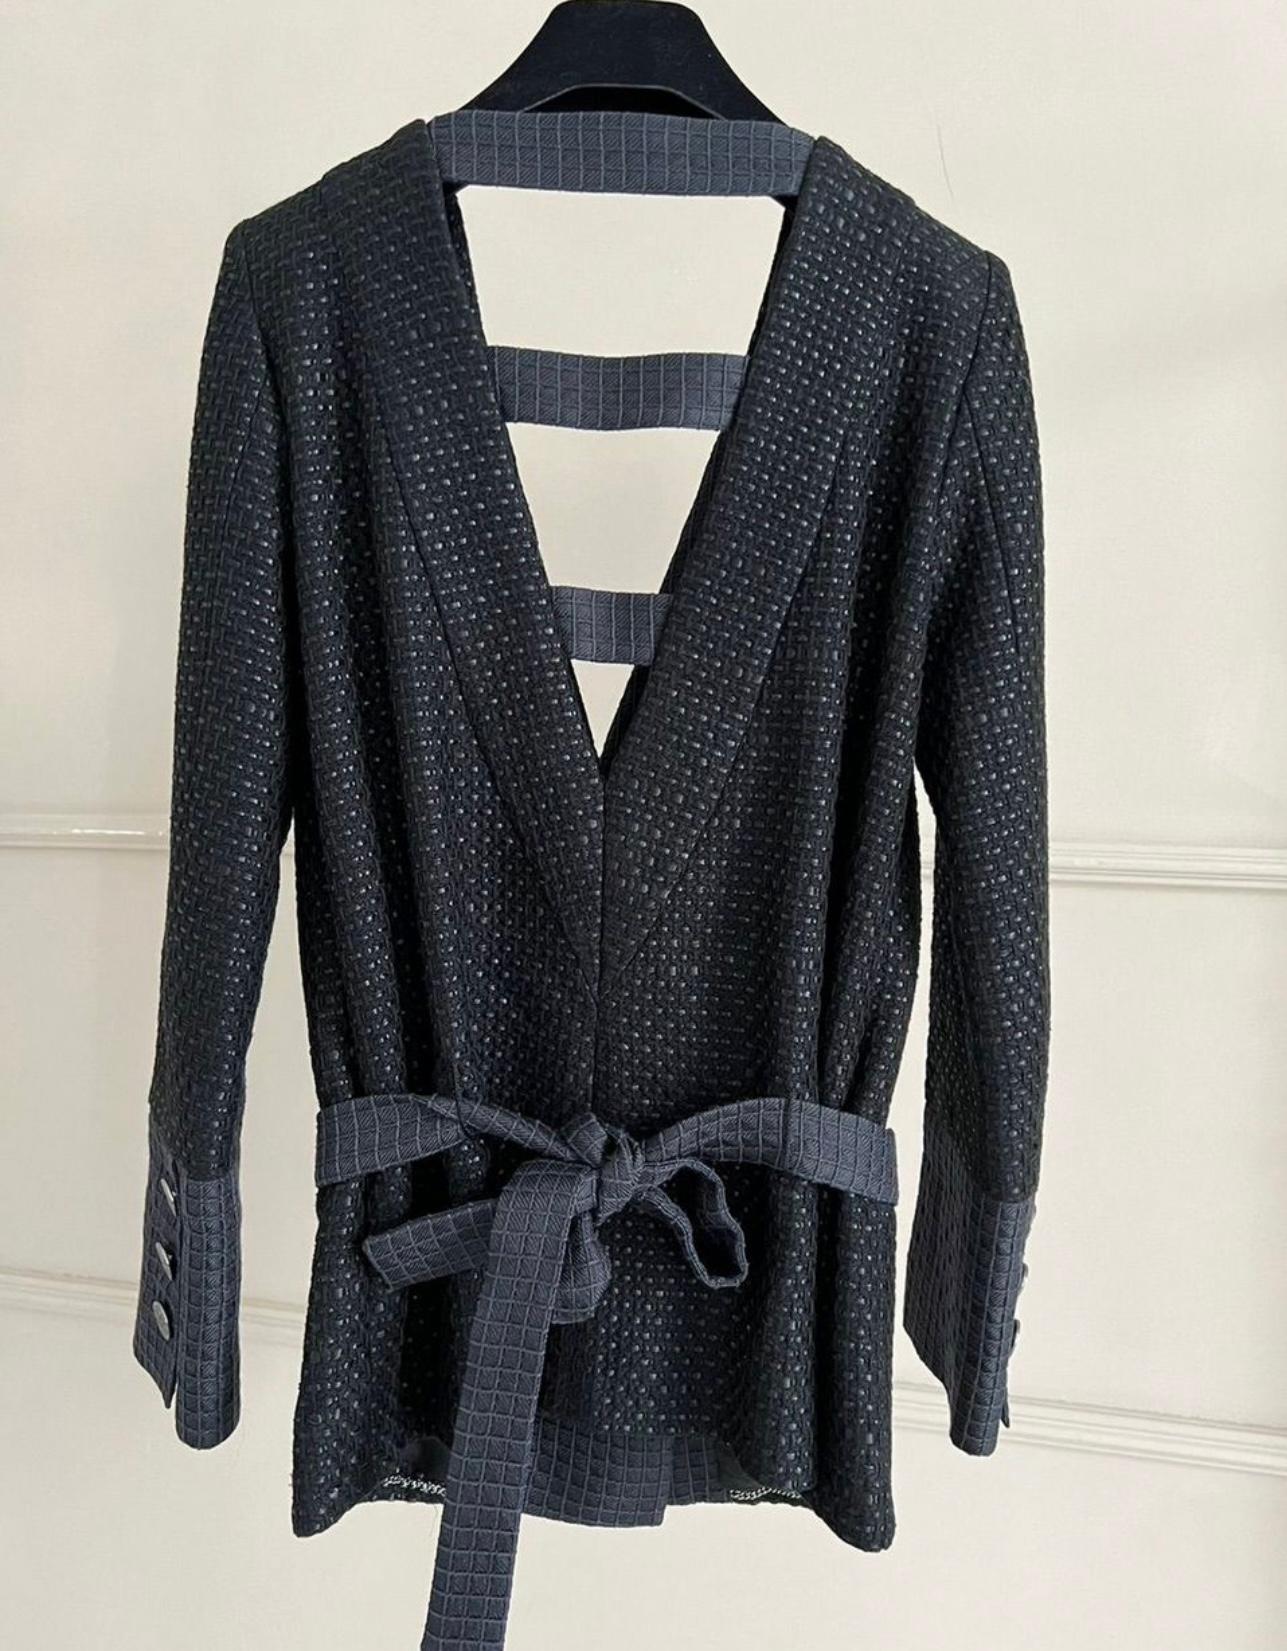 Chanel Runway Paris / Seoul Black Tweed Jacket For Sale 5